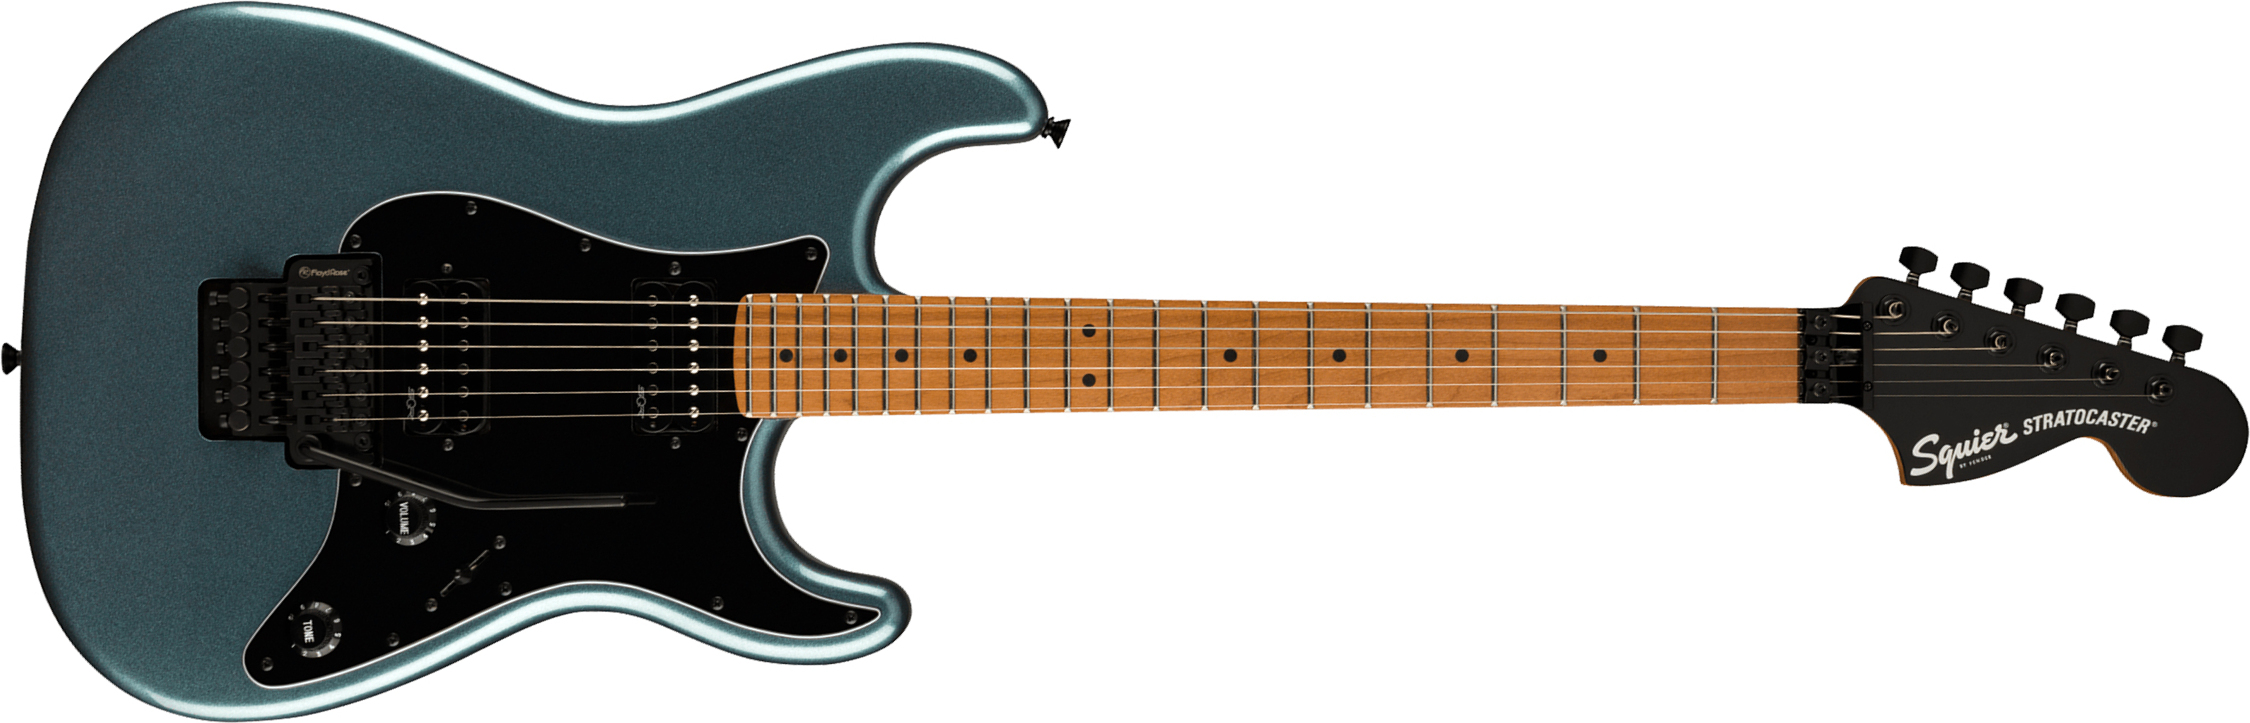 Squier Strat Contemporary Hh Fr Mn - Gunmetal Metallic - Elektrische gitaar in Str-vorm - Main picture